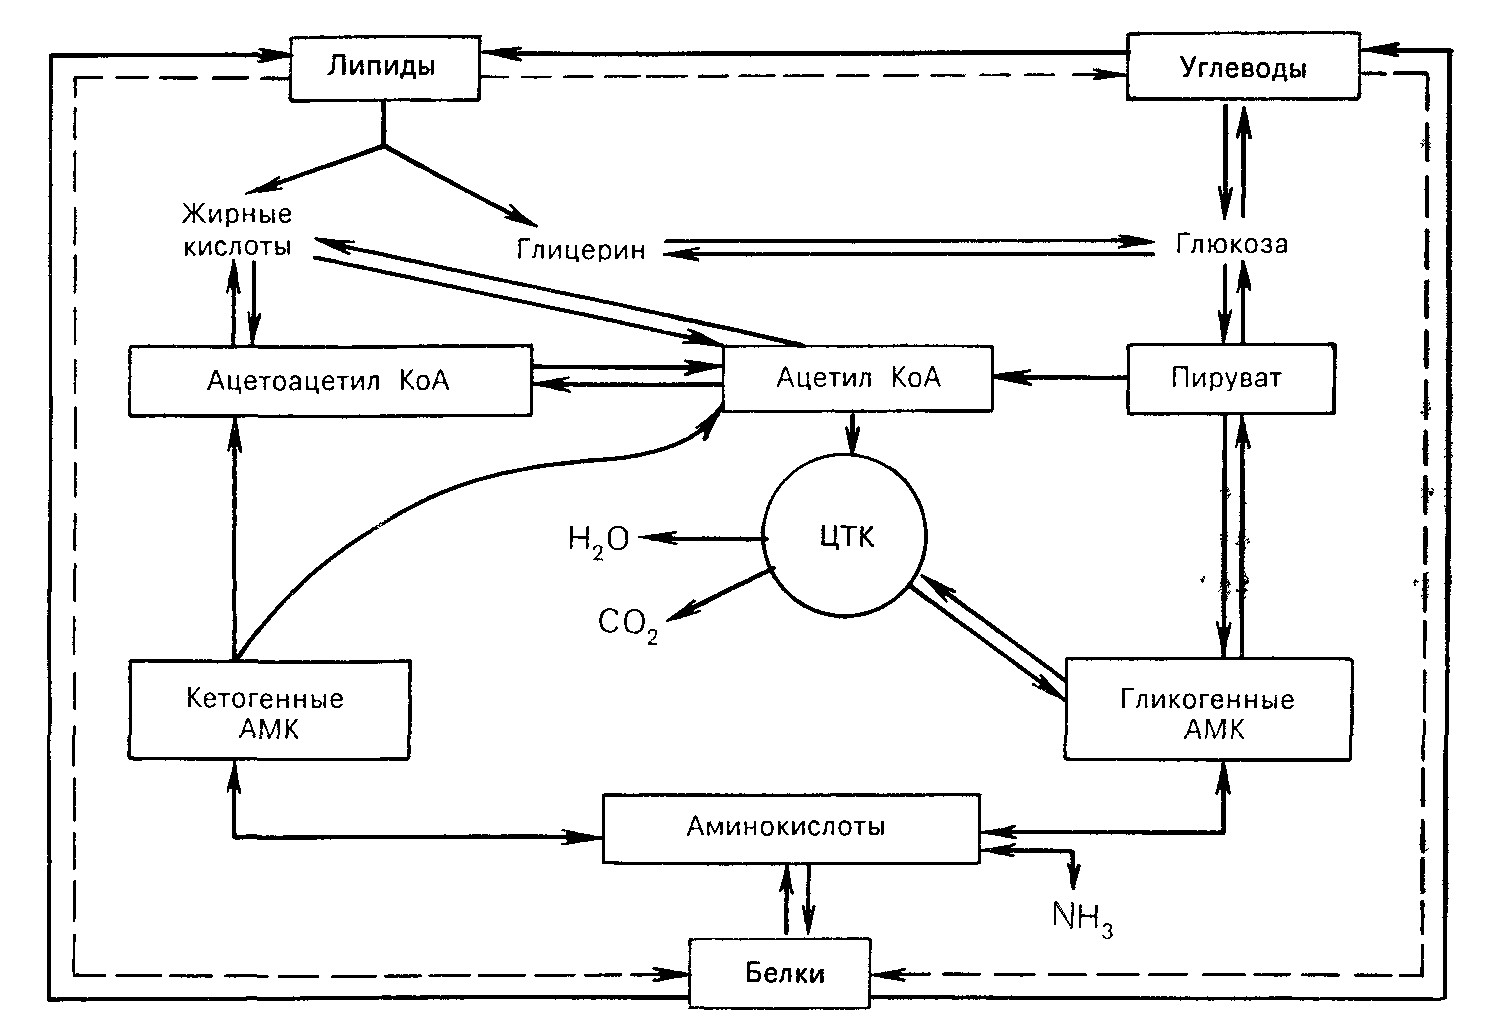 Общие пути метаболизма аминокислот. Взаимосвязь обмена углеводов, липидов, аминокислот (схема).. Схема взаимосвязи обмена аминокислот и углеводов. Схема взаимосвязи обмена углеводов липидов и белков. Схема взаимосвязи углеводного и липидного обмена.